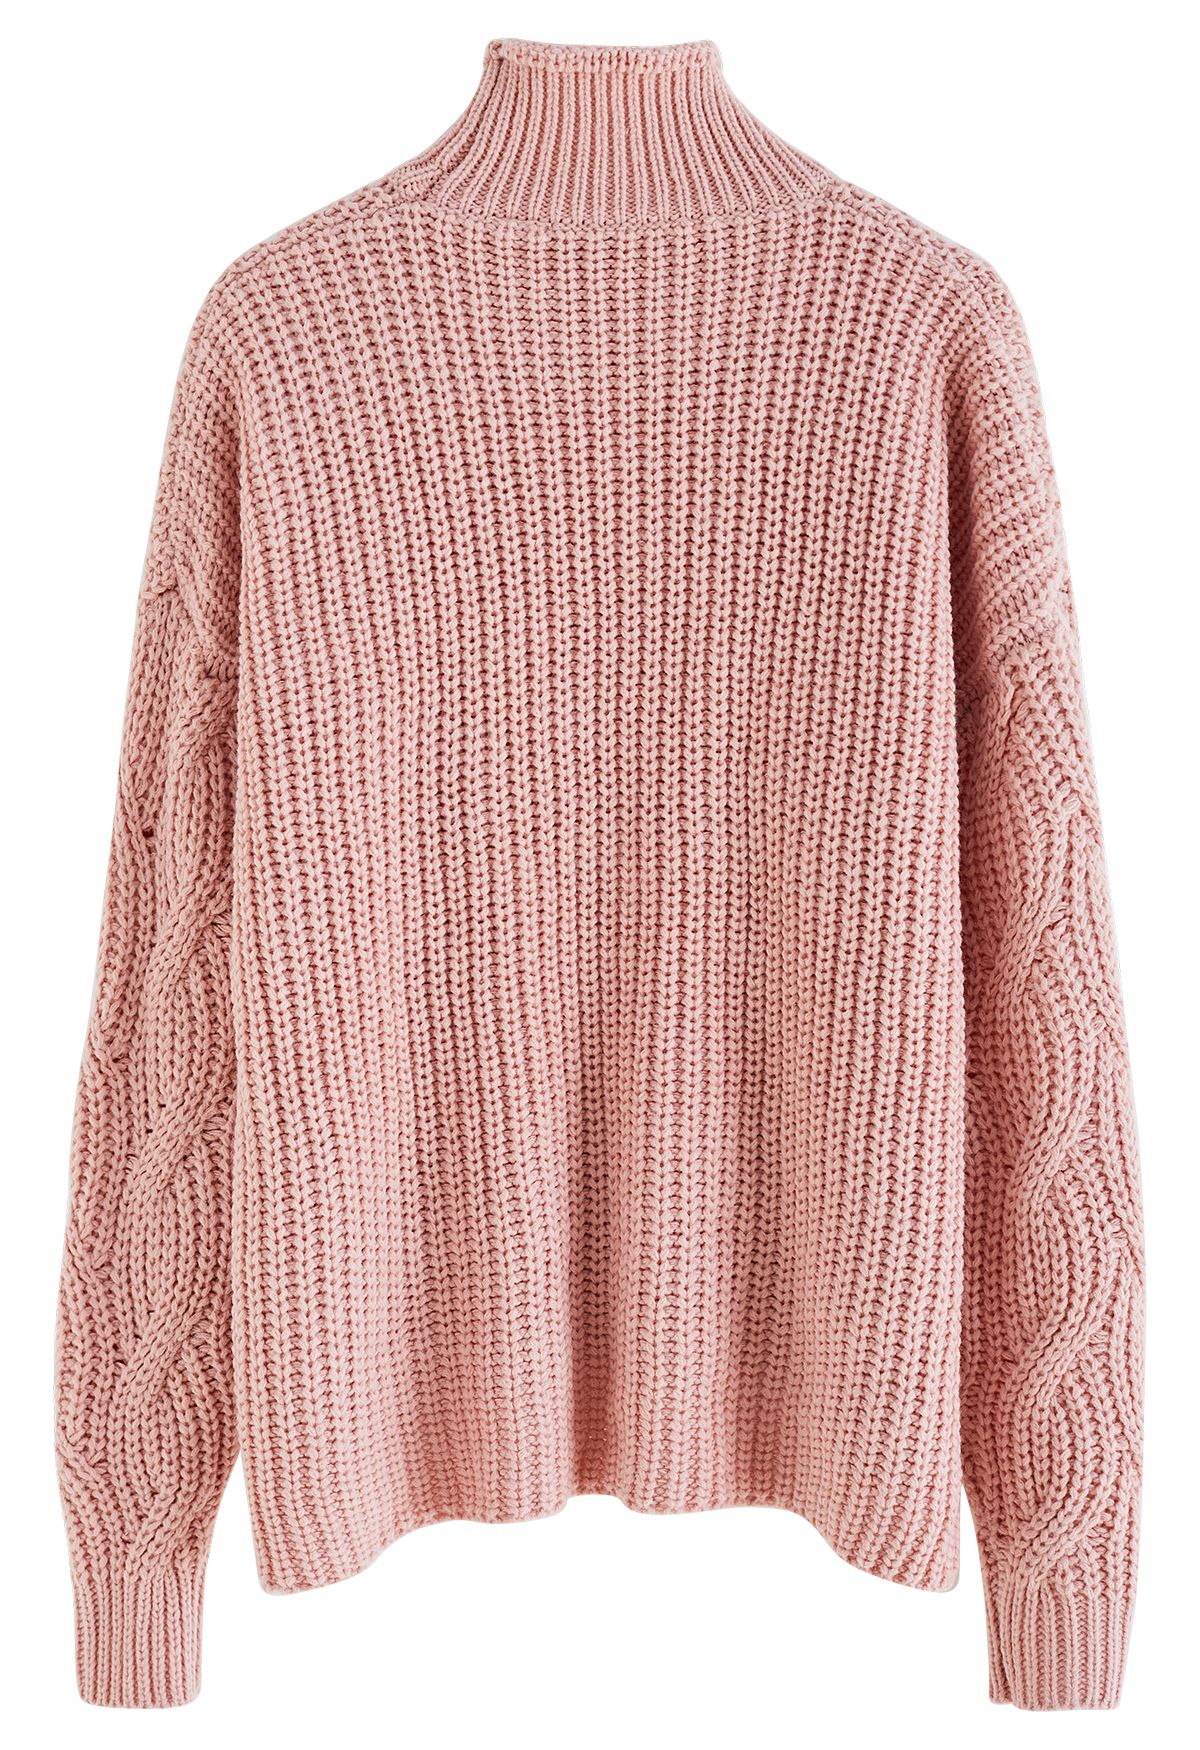 Suéter de punto grueso trenzado Hi-Lo de cuello alto en rosa